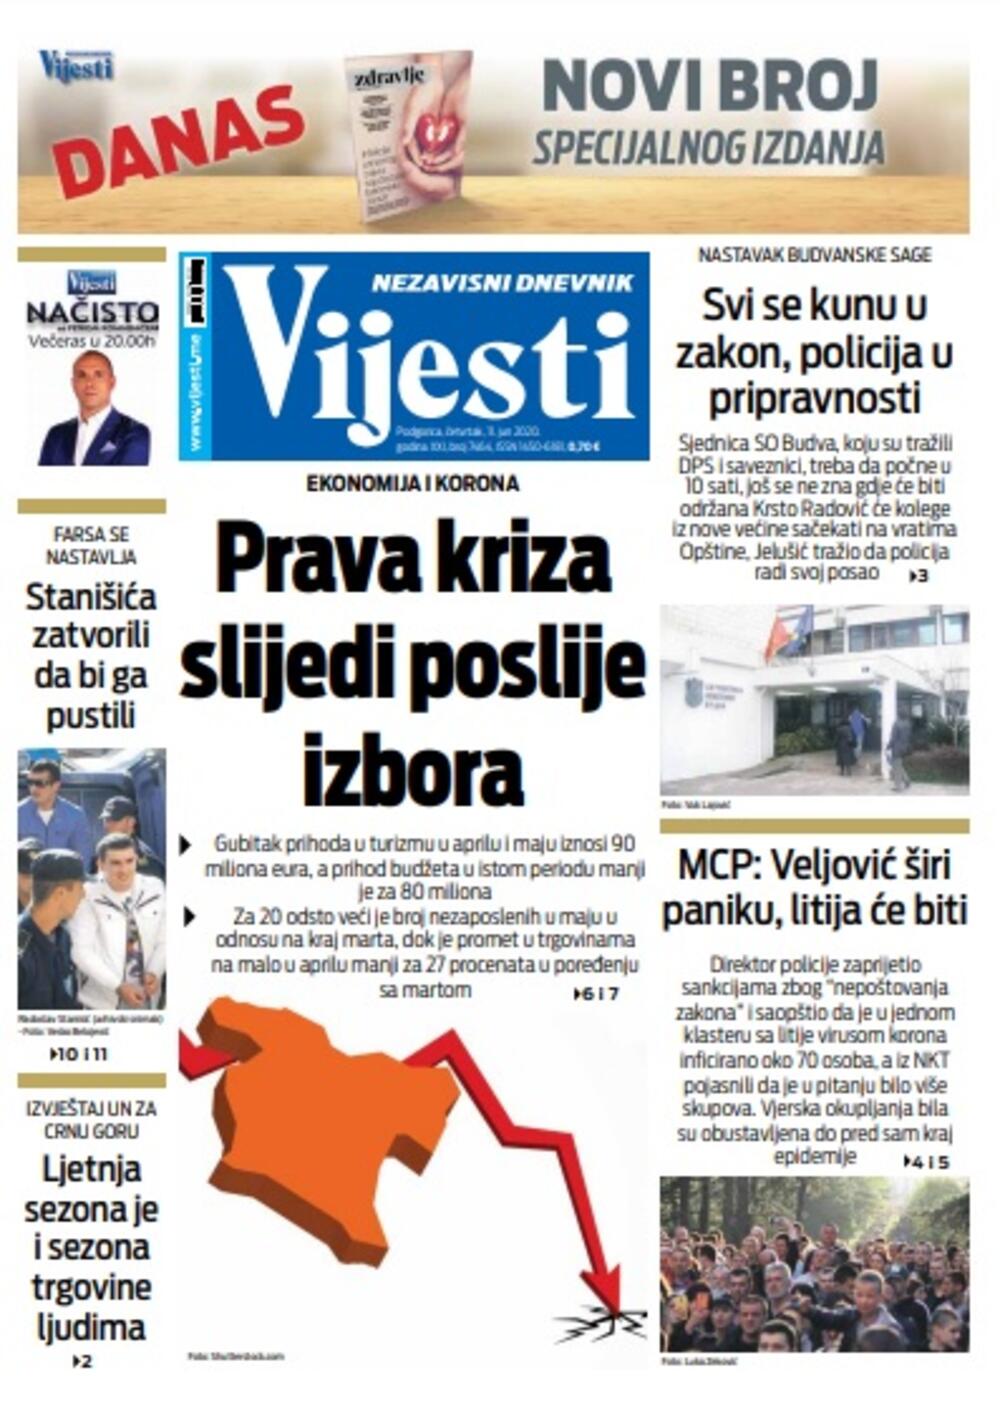 Naslovna strana "Vijesti" za četvrtak 11. jun 2020. godine, Foto: Vijesti